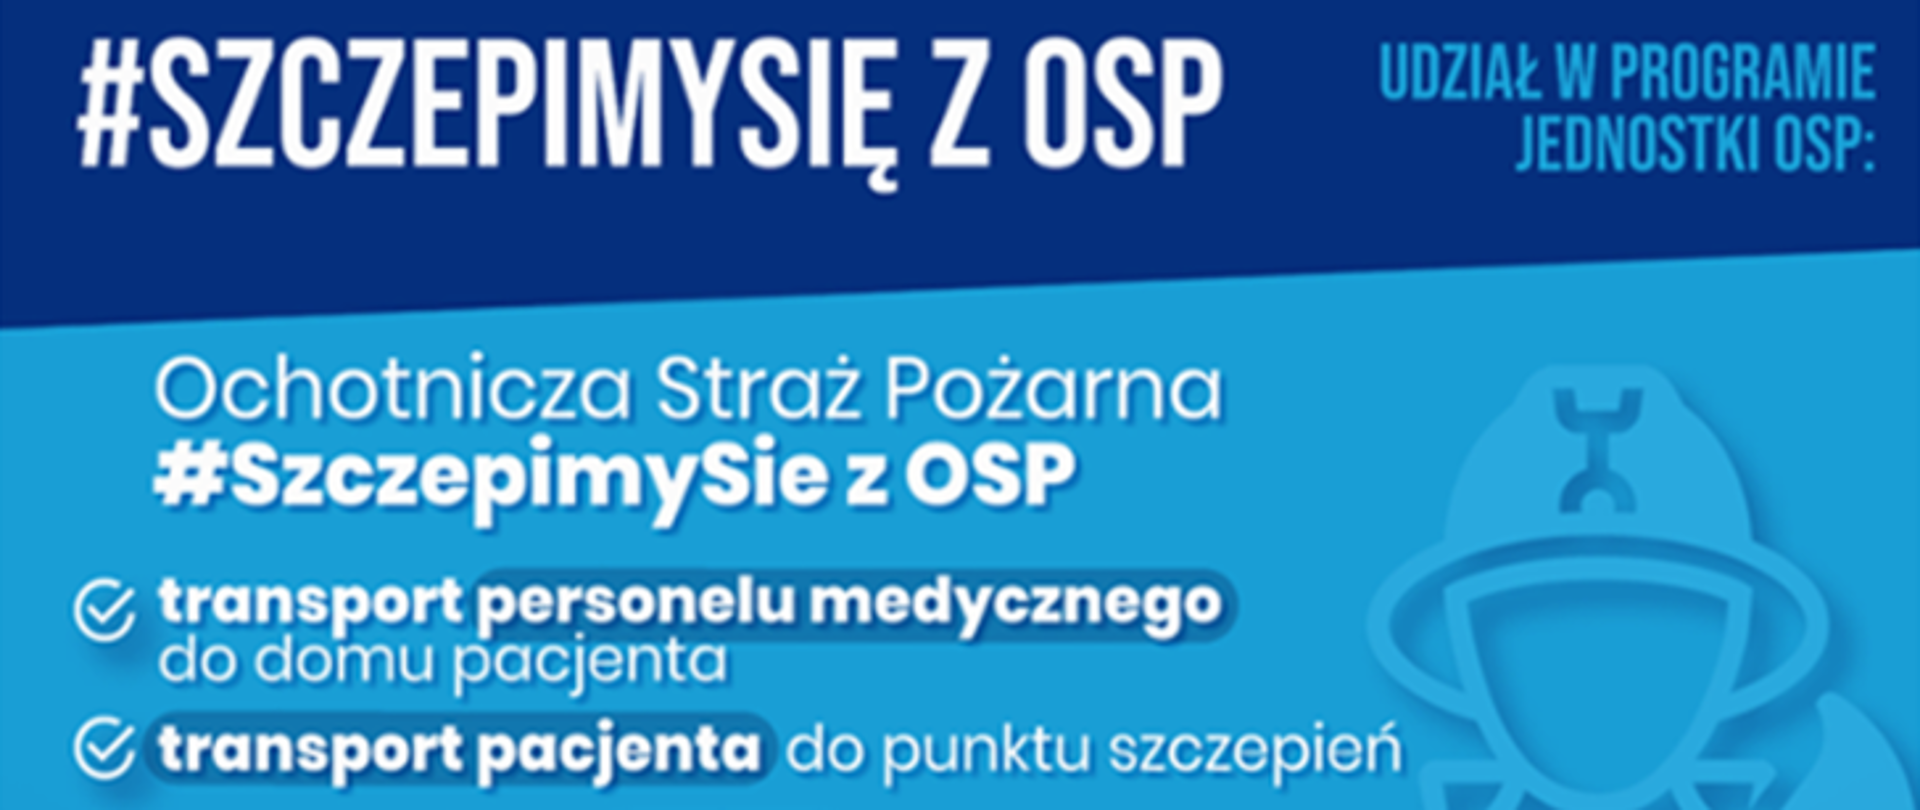 Baner kampanii zachęcający OSP do pomocy w szczepieniach